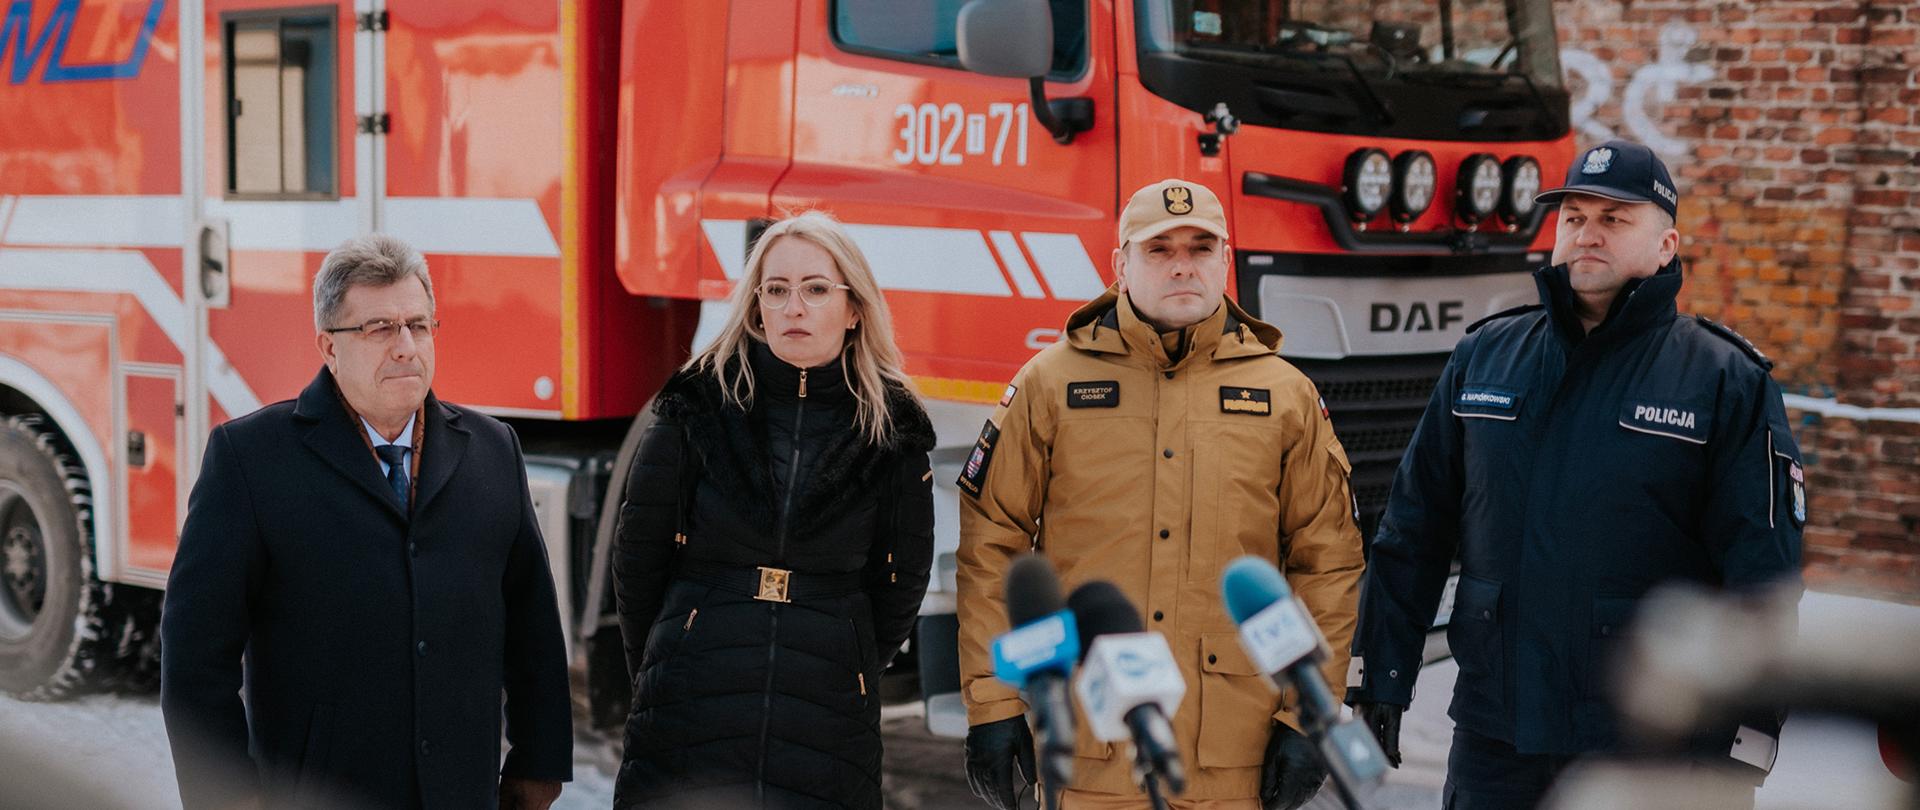 Na zdjęciu widzimy uczestników konferencji prasowej od lewej w garniturze i płaszczu mężczyzna, potem kobieta w kurtce zimowej ciemnej, potem strażak w mundurze piaskowym i policjant w mundurze granatowym. Stoją na dworze, dookoła śnieg a w tle samochód strażacki. 